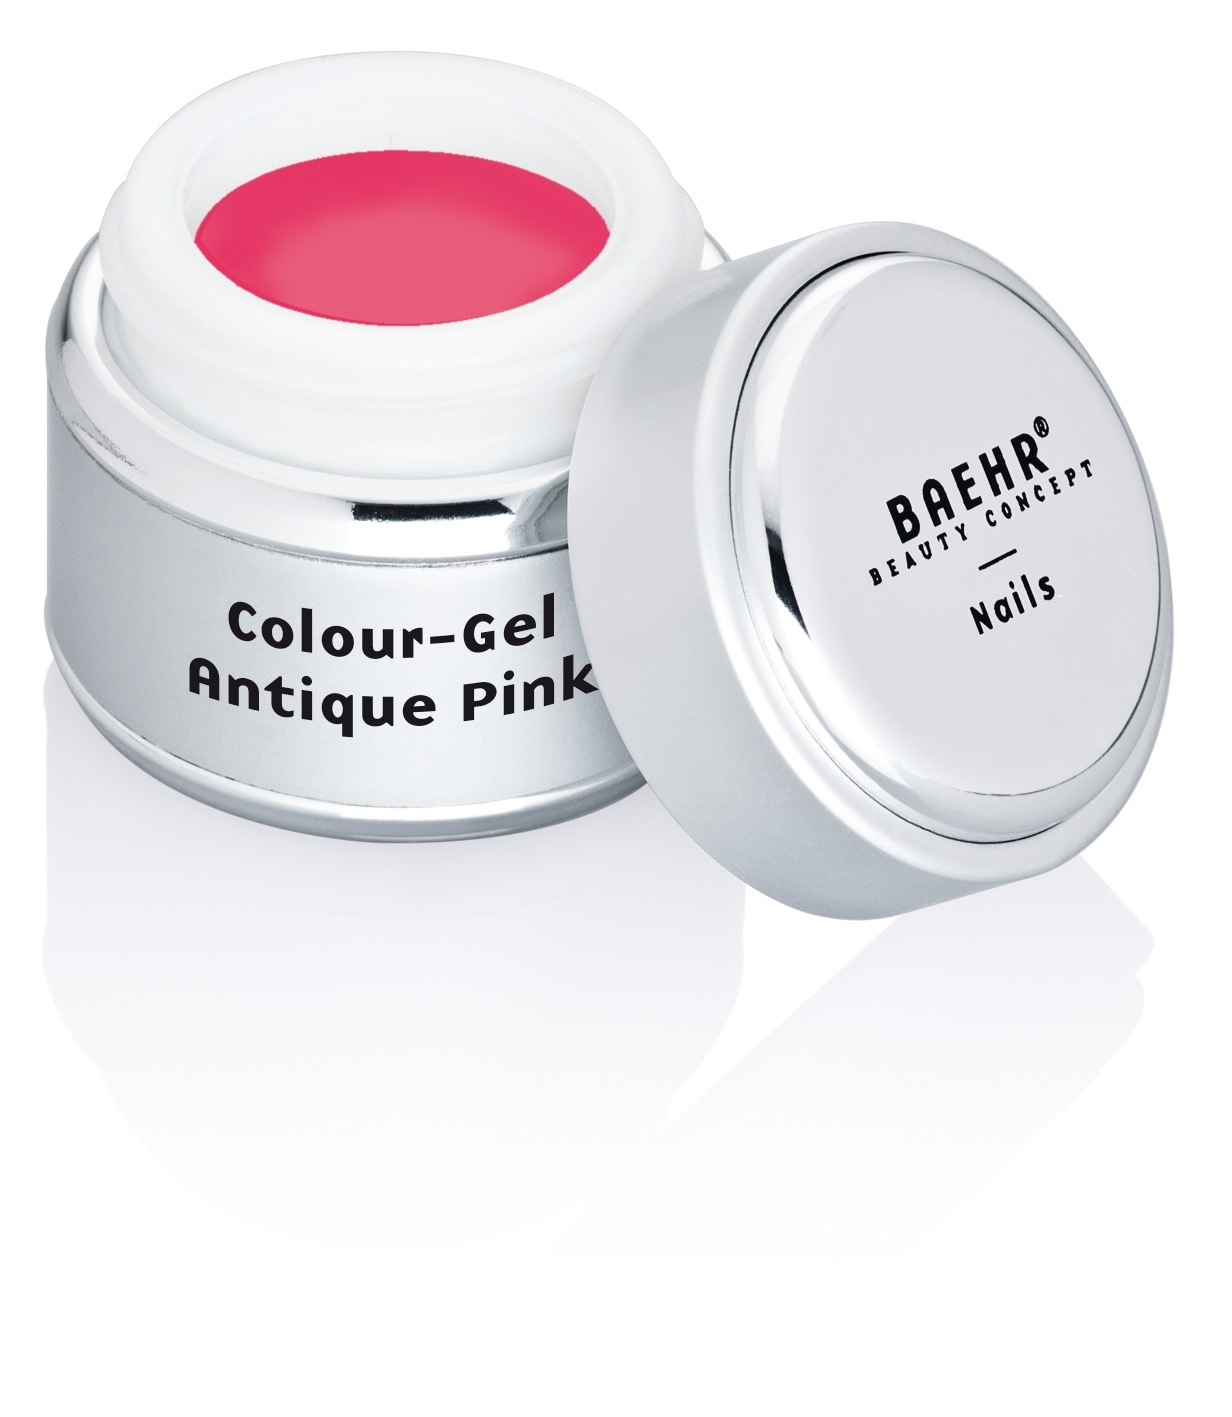 BAEHR BEAUTY CONCEPT - NAILS Colour-Gel Antique Pink 5 ml